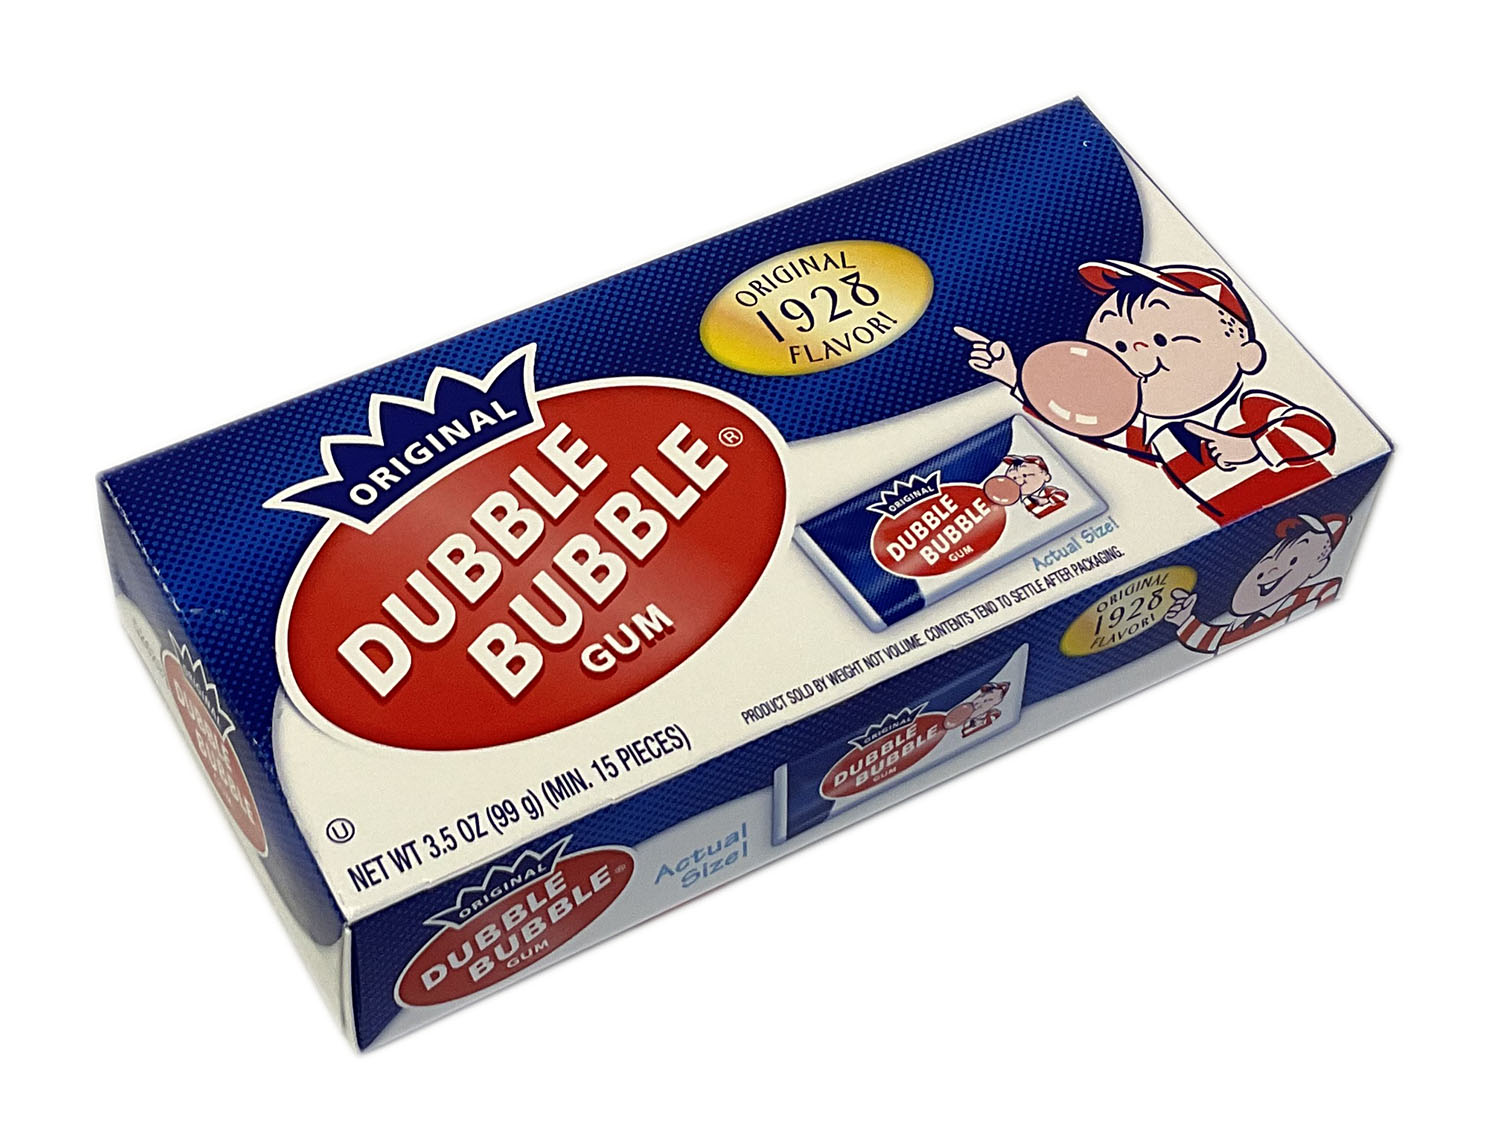 Dubble Bubble Gum (flat pack) 1928 flavor - 3.5 oz theater box